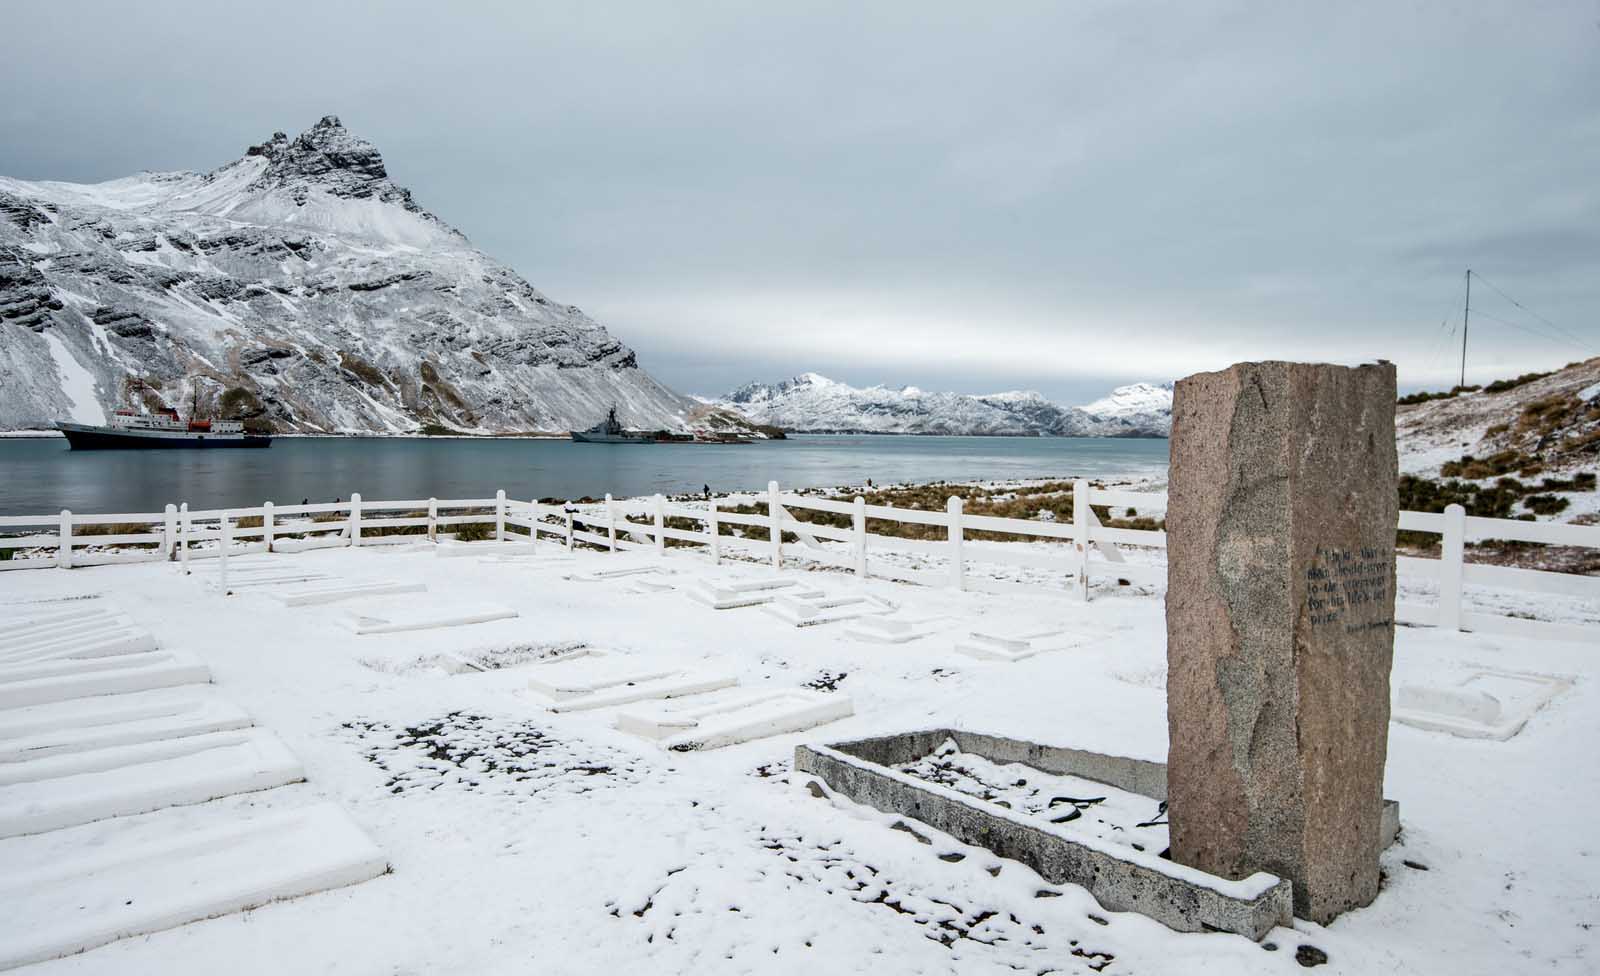 Shackleton's gravesite